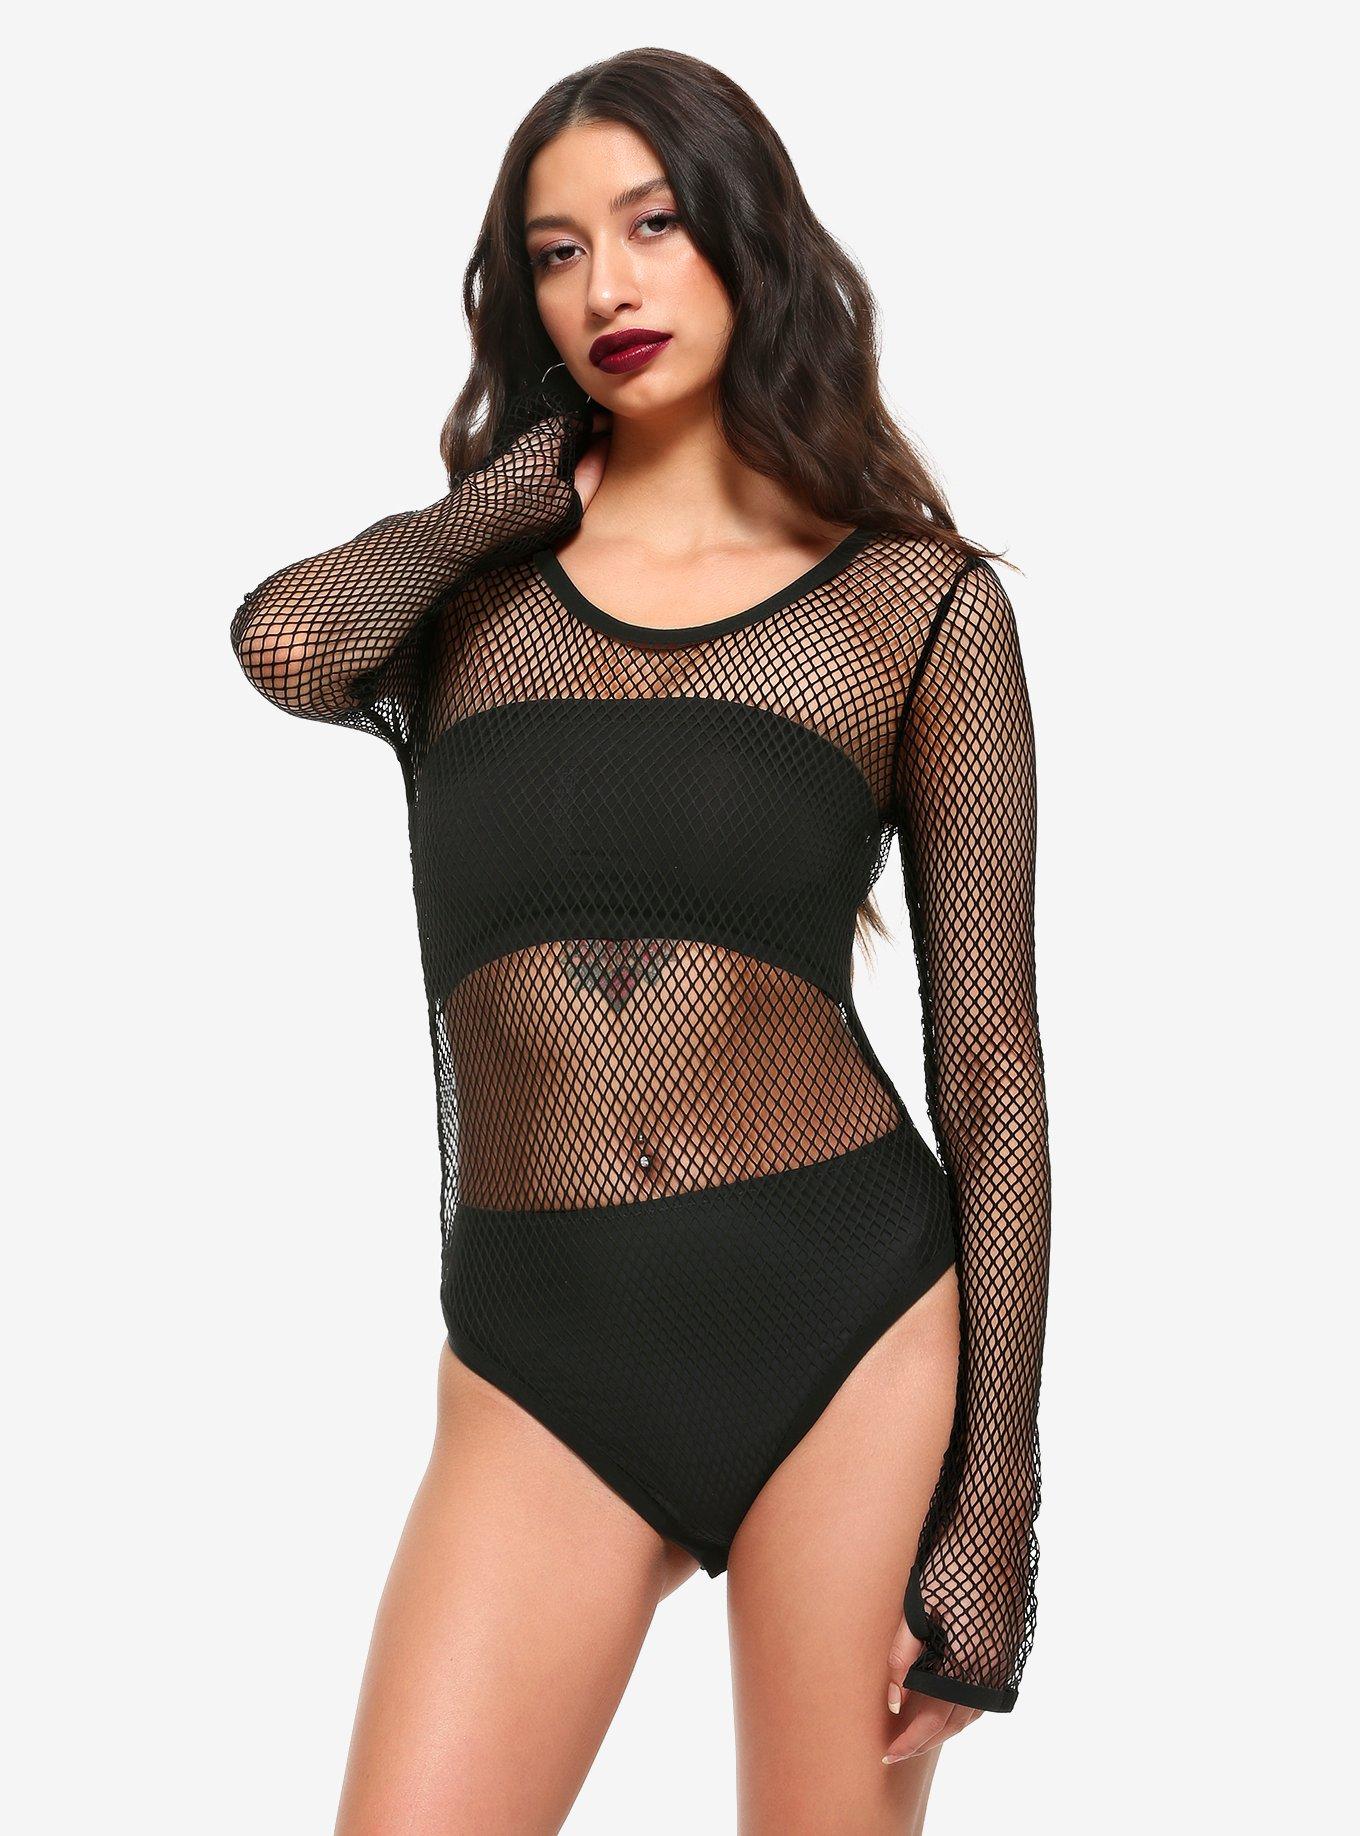 Black Fishnet Bodysuit